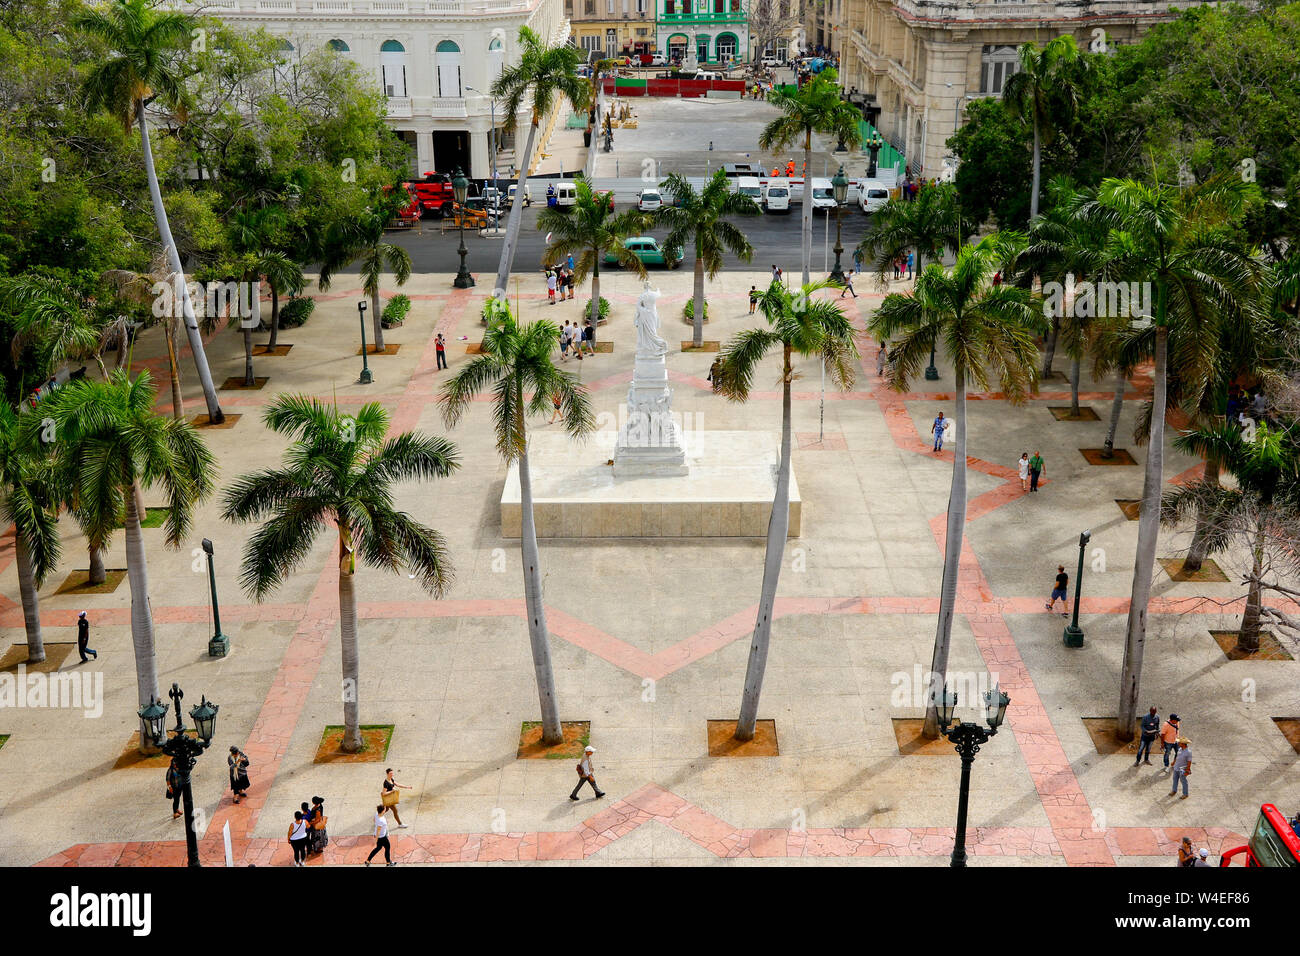 Parque central plaza in la Havana, Cuba Stock Photo